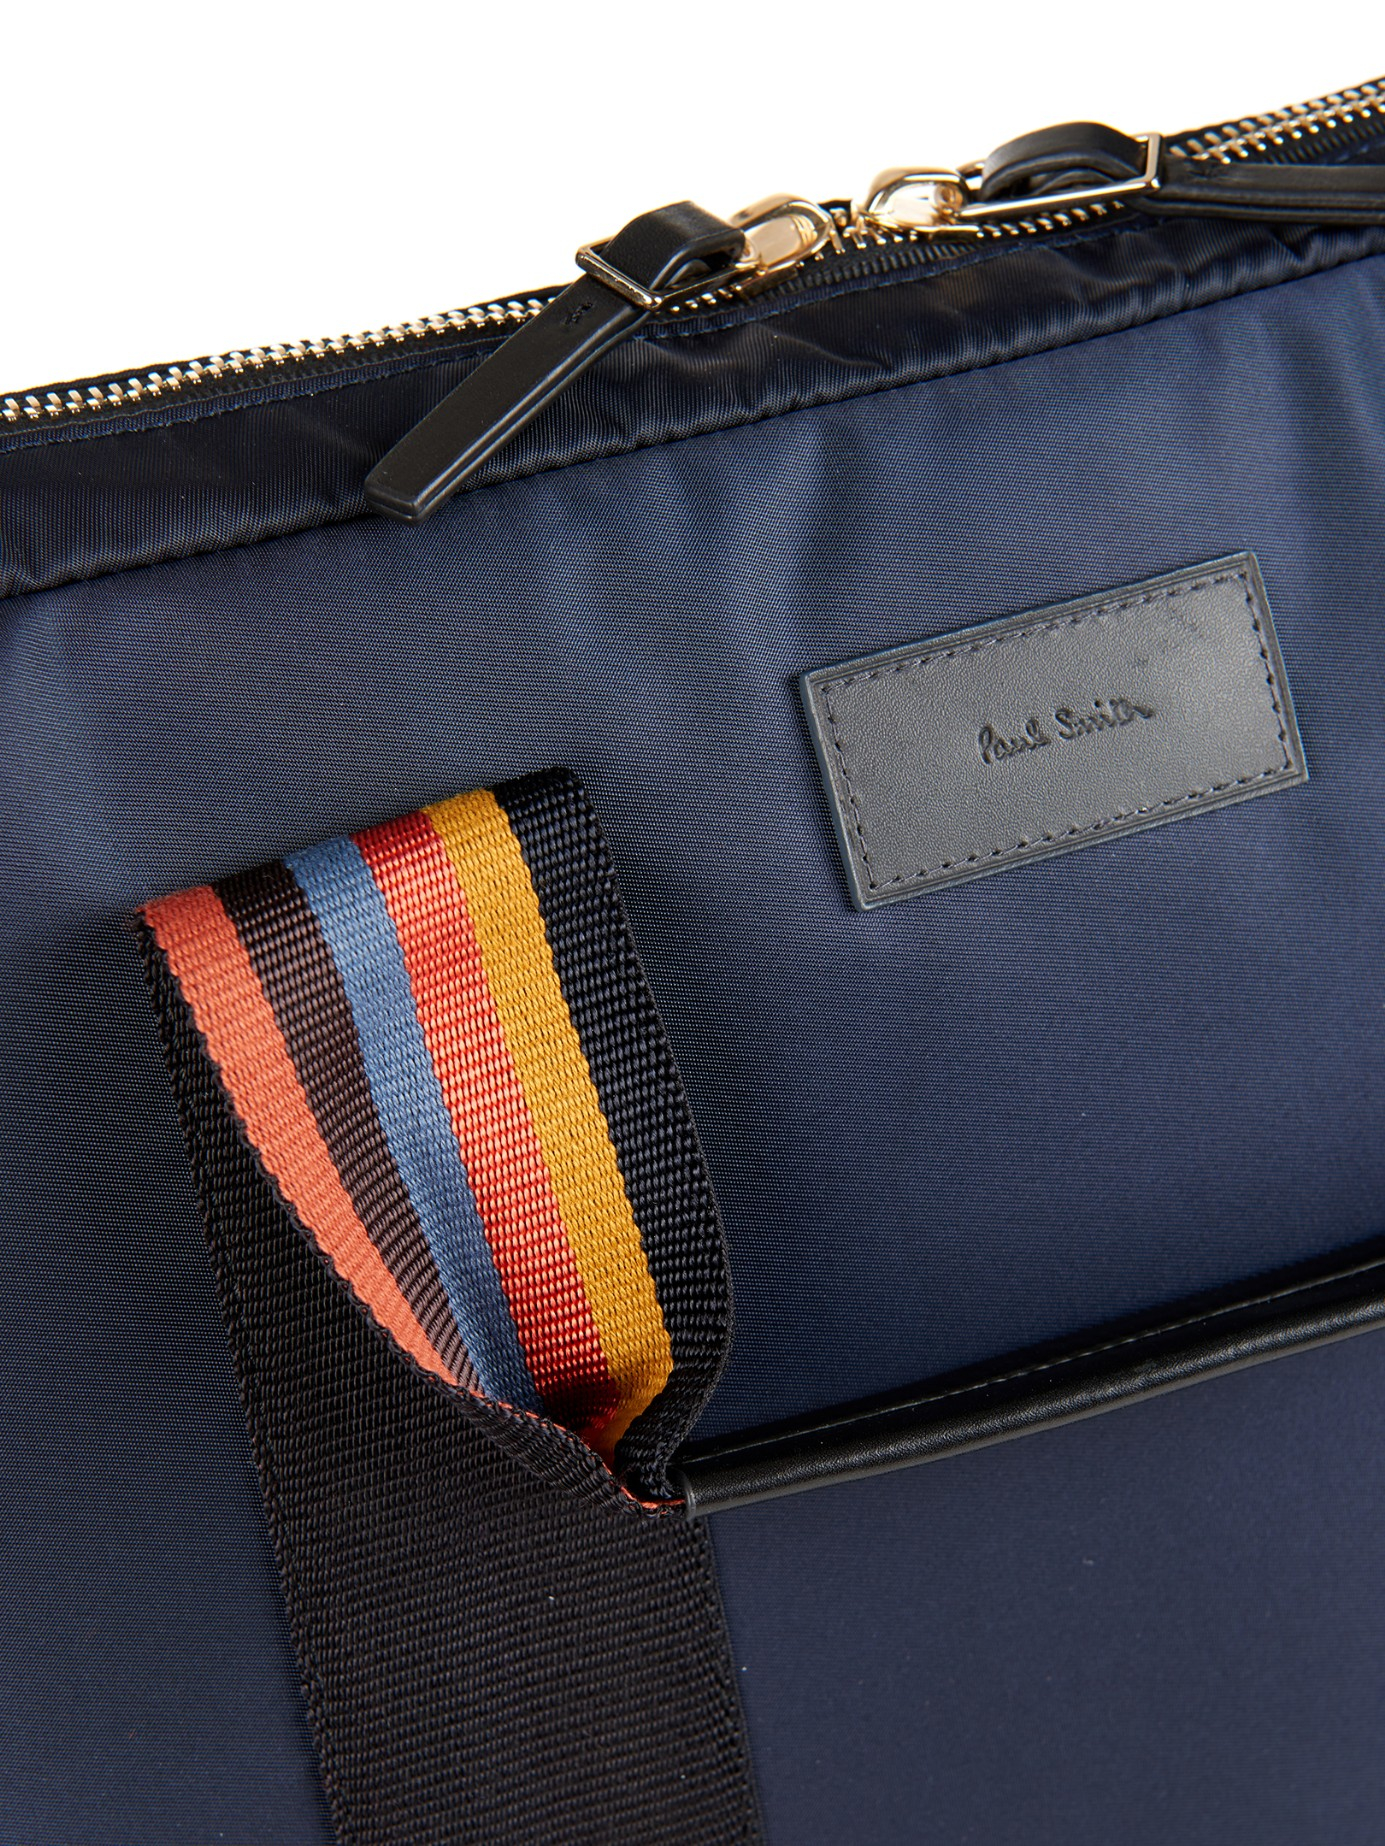 Paul Smith Nylon Laptop Bag in Navy (Blue) for Men - Lyst